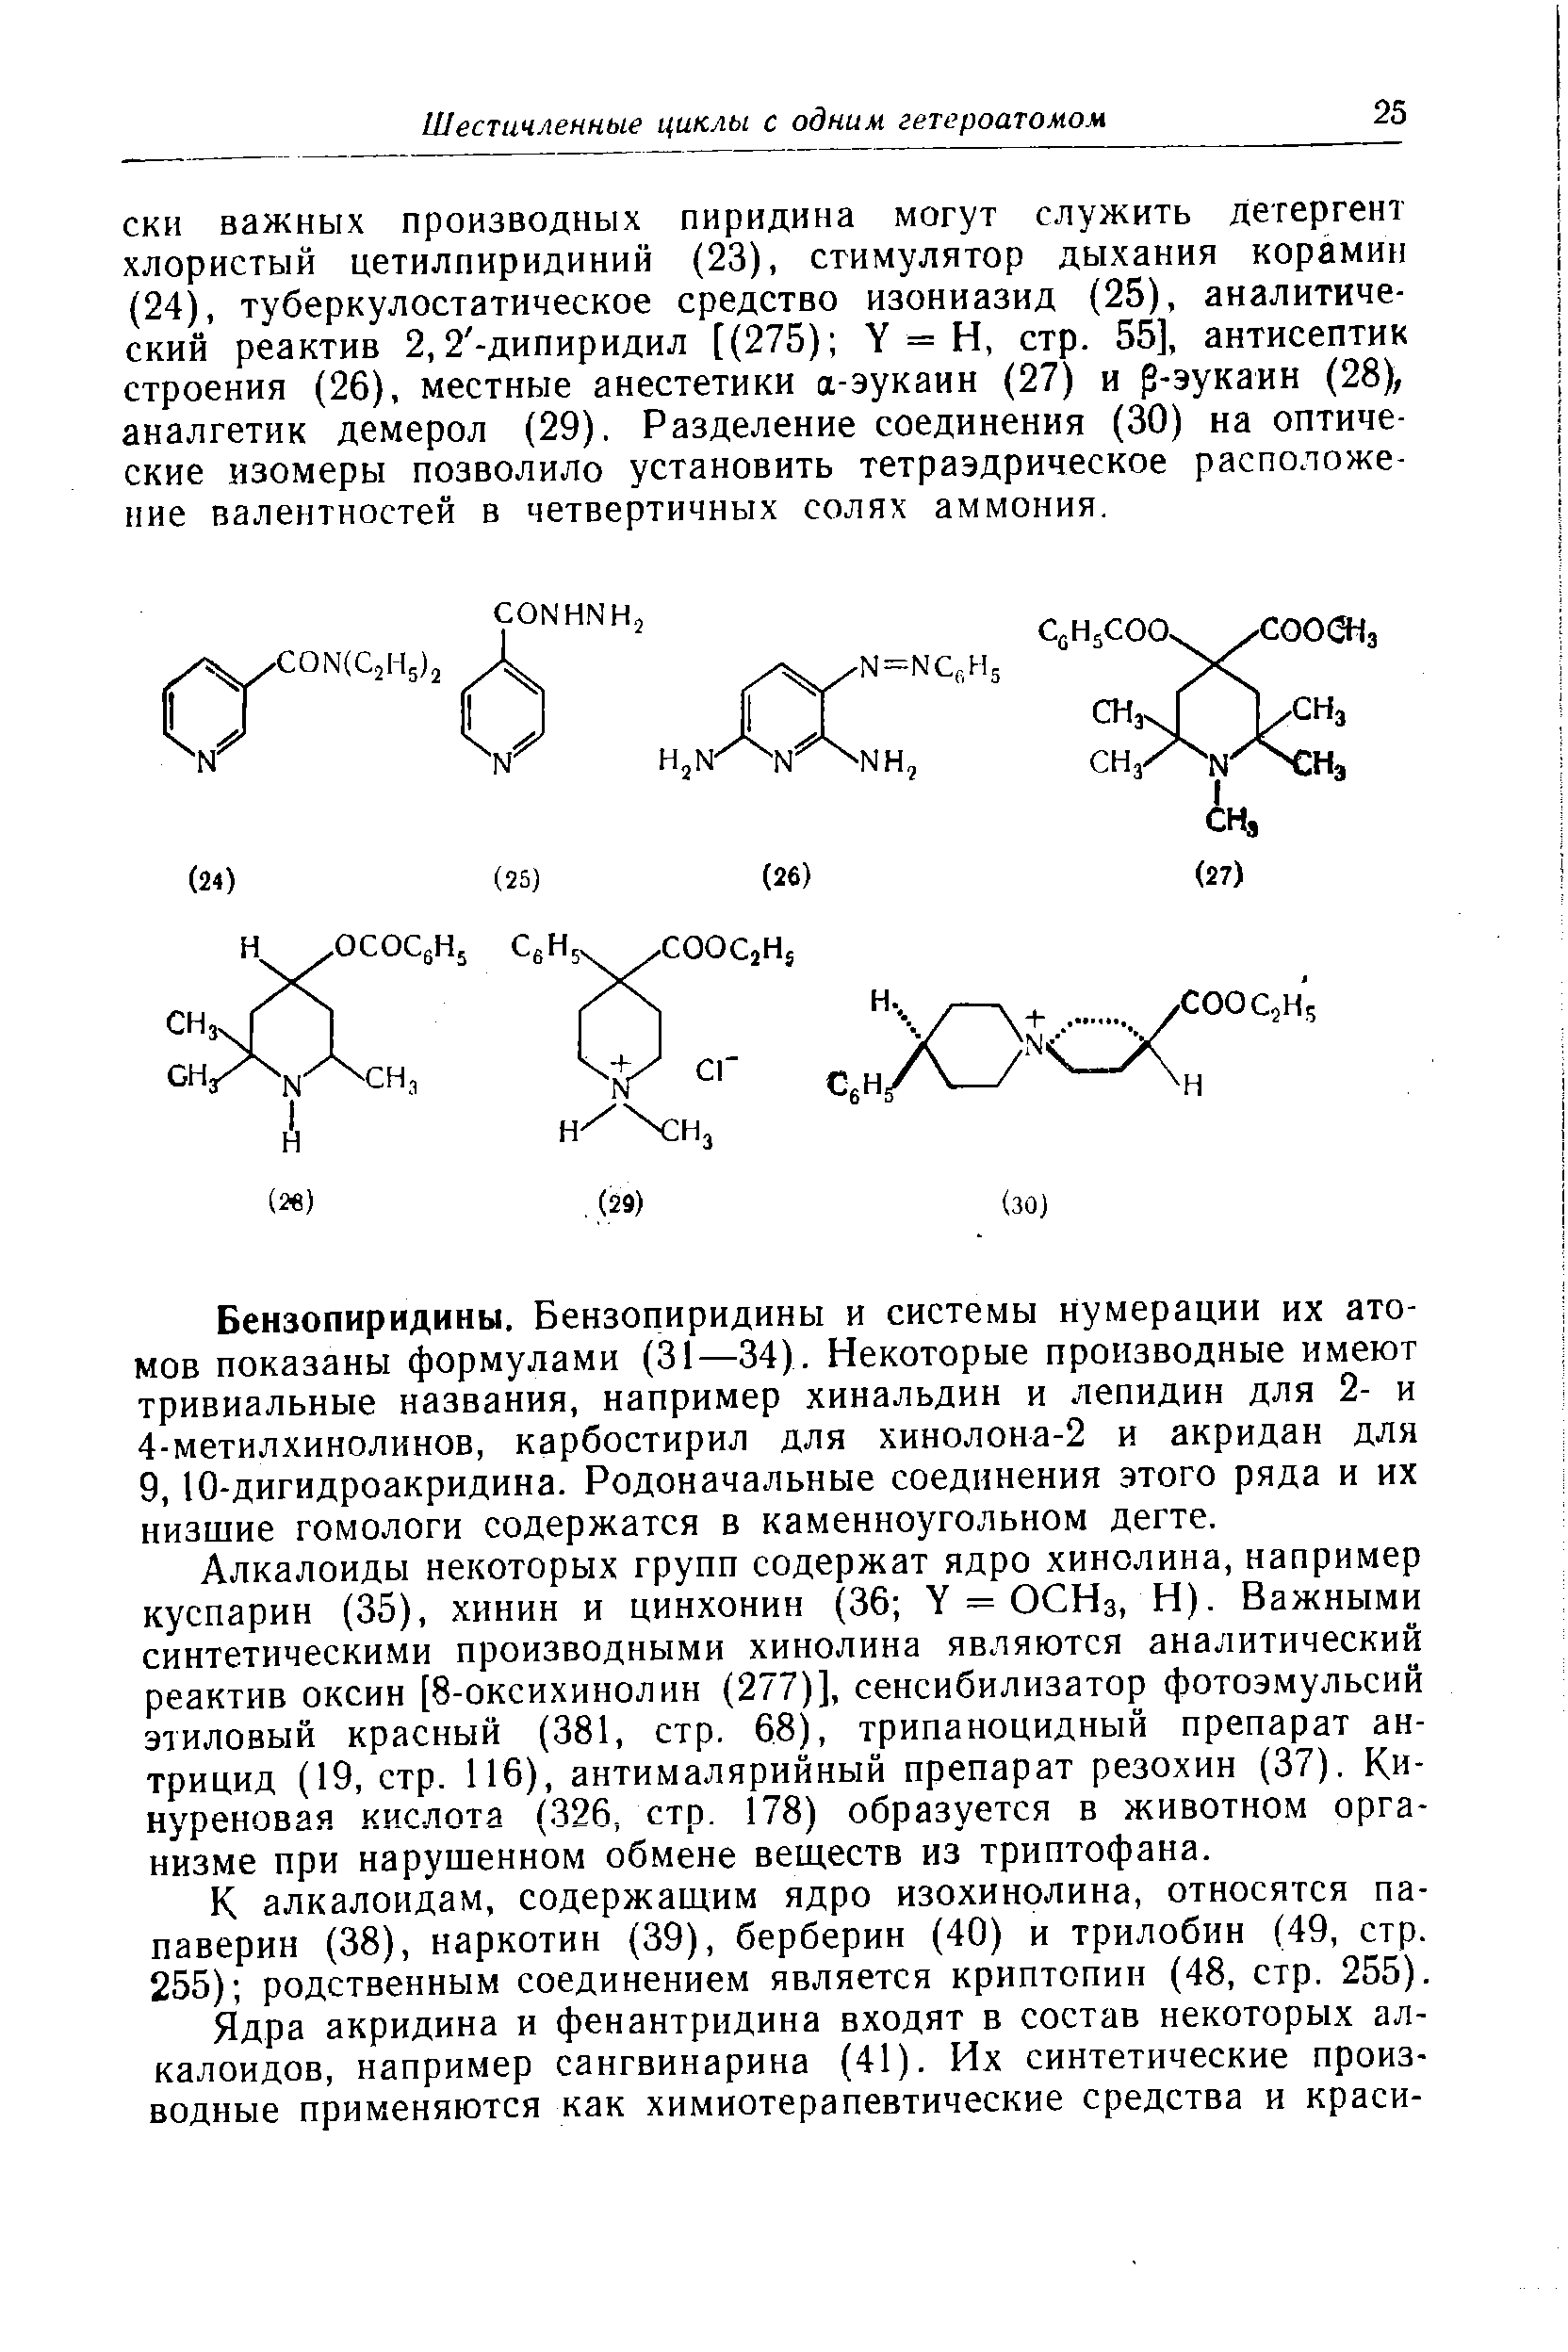 СКИ важных производных пиридина могут служить детергент хлористый цетилпиридиний (23), стимулятор дыхания корамин (24), туберкулостатическое средство изониазид (25), аналитический реактив 2,2 -дипиридил [(275) V = Н, стр. 55], антисептик строения (26), местные анестетики а-эукаин (27) и р-эукаин (28), аналгетик демерол (29). Разделение соединения (30) на оптические изомеры позволило установить тетраэдрическое расположение валентностей в четвертичных солях аммония.